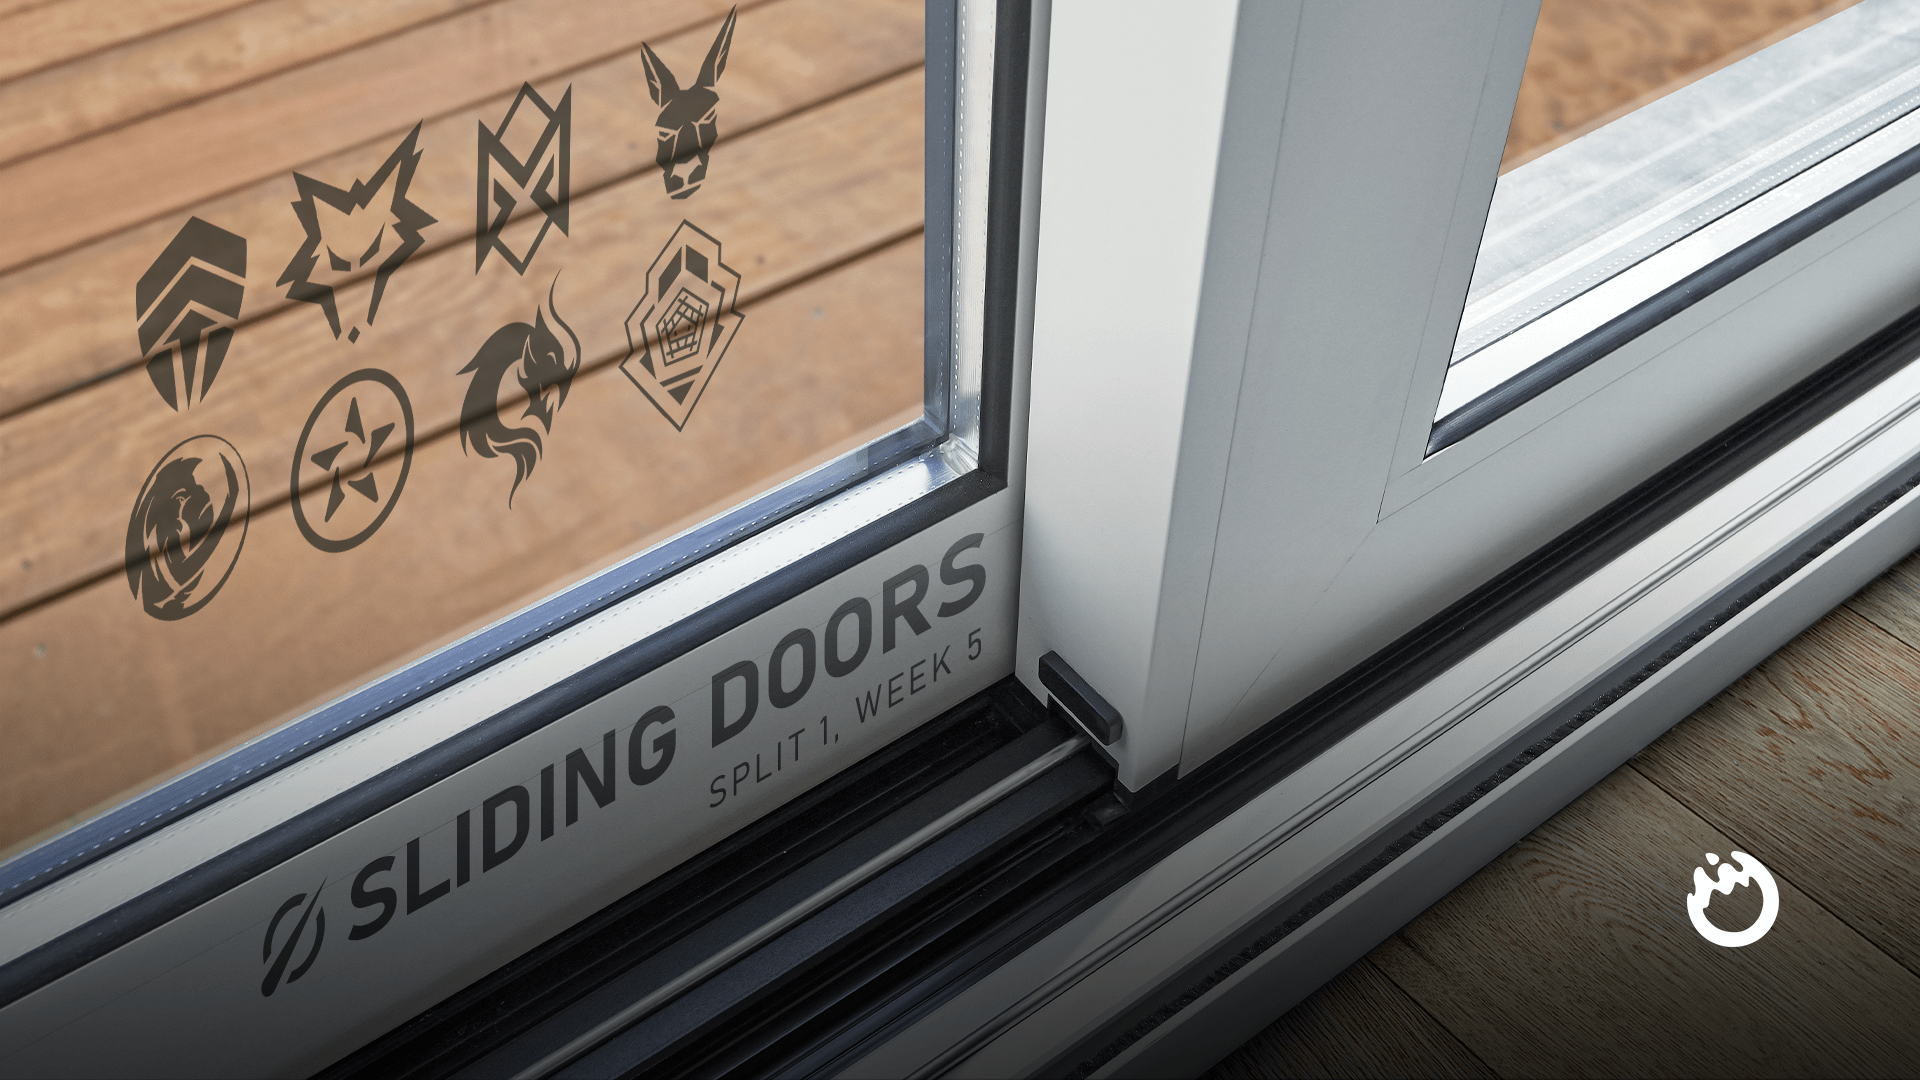 Sliding Doors: LCO 2022 Split 1, Week 5